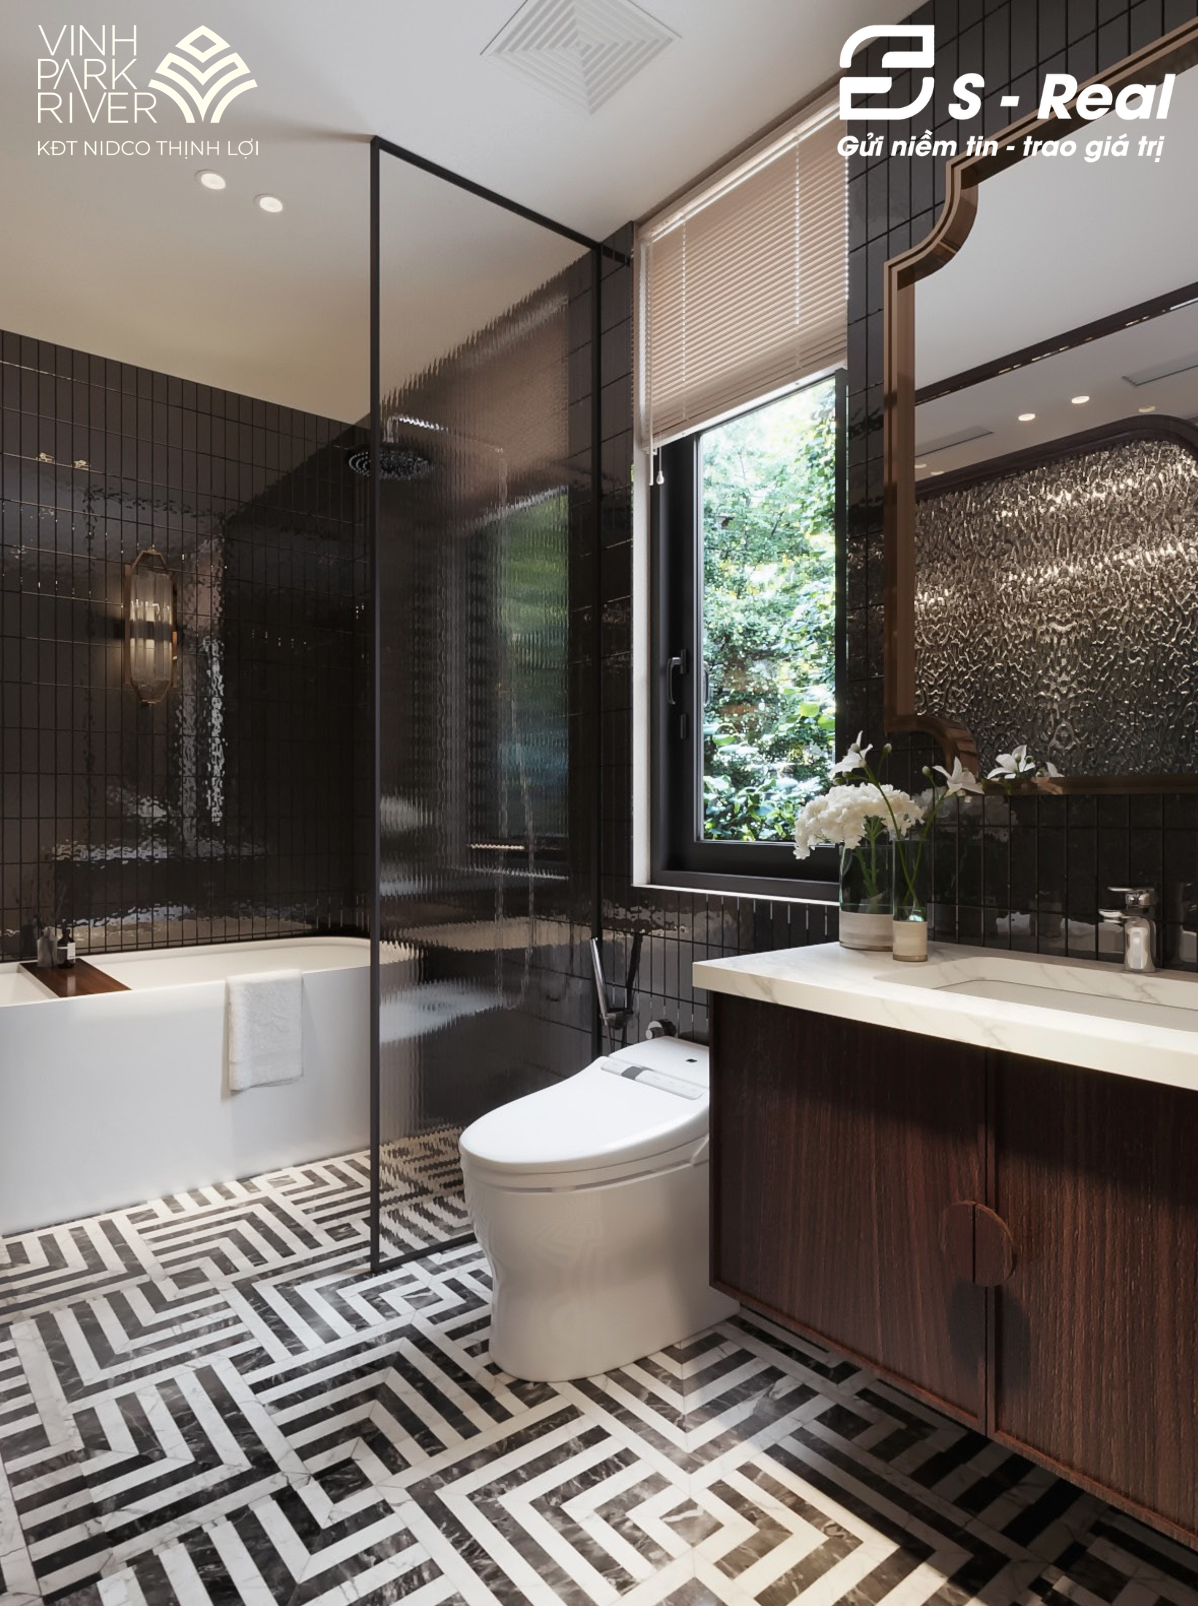 Thiết kế phòng WC biệt thự Vinh Park River theo phong cách tân cổ điển